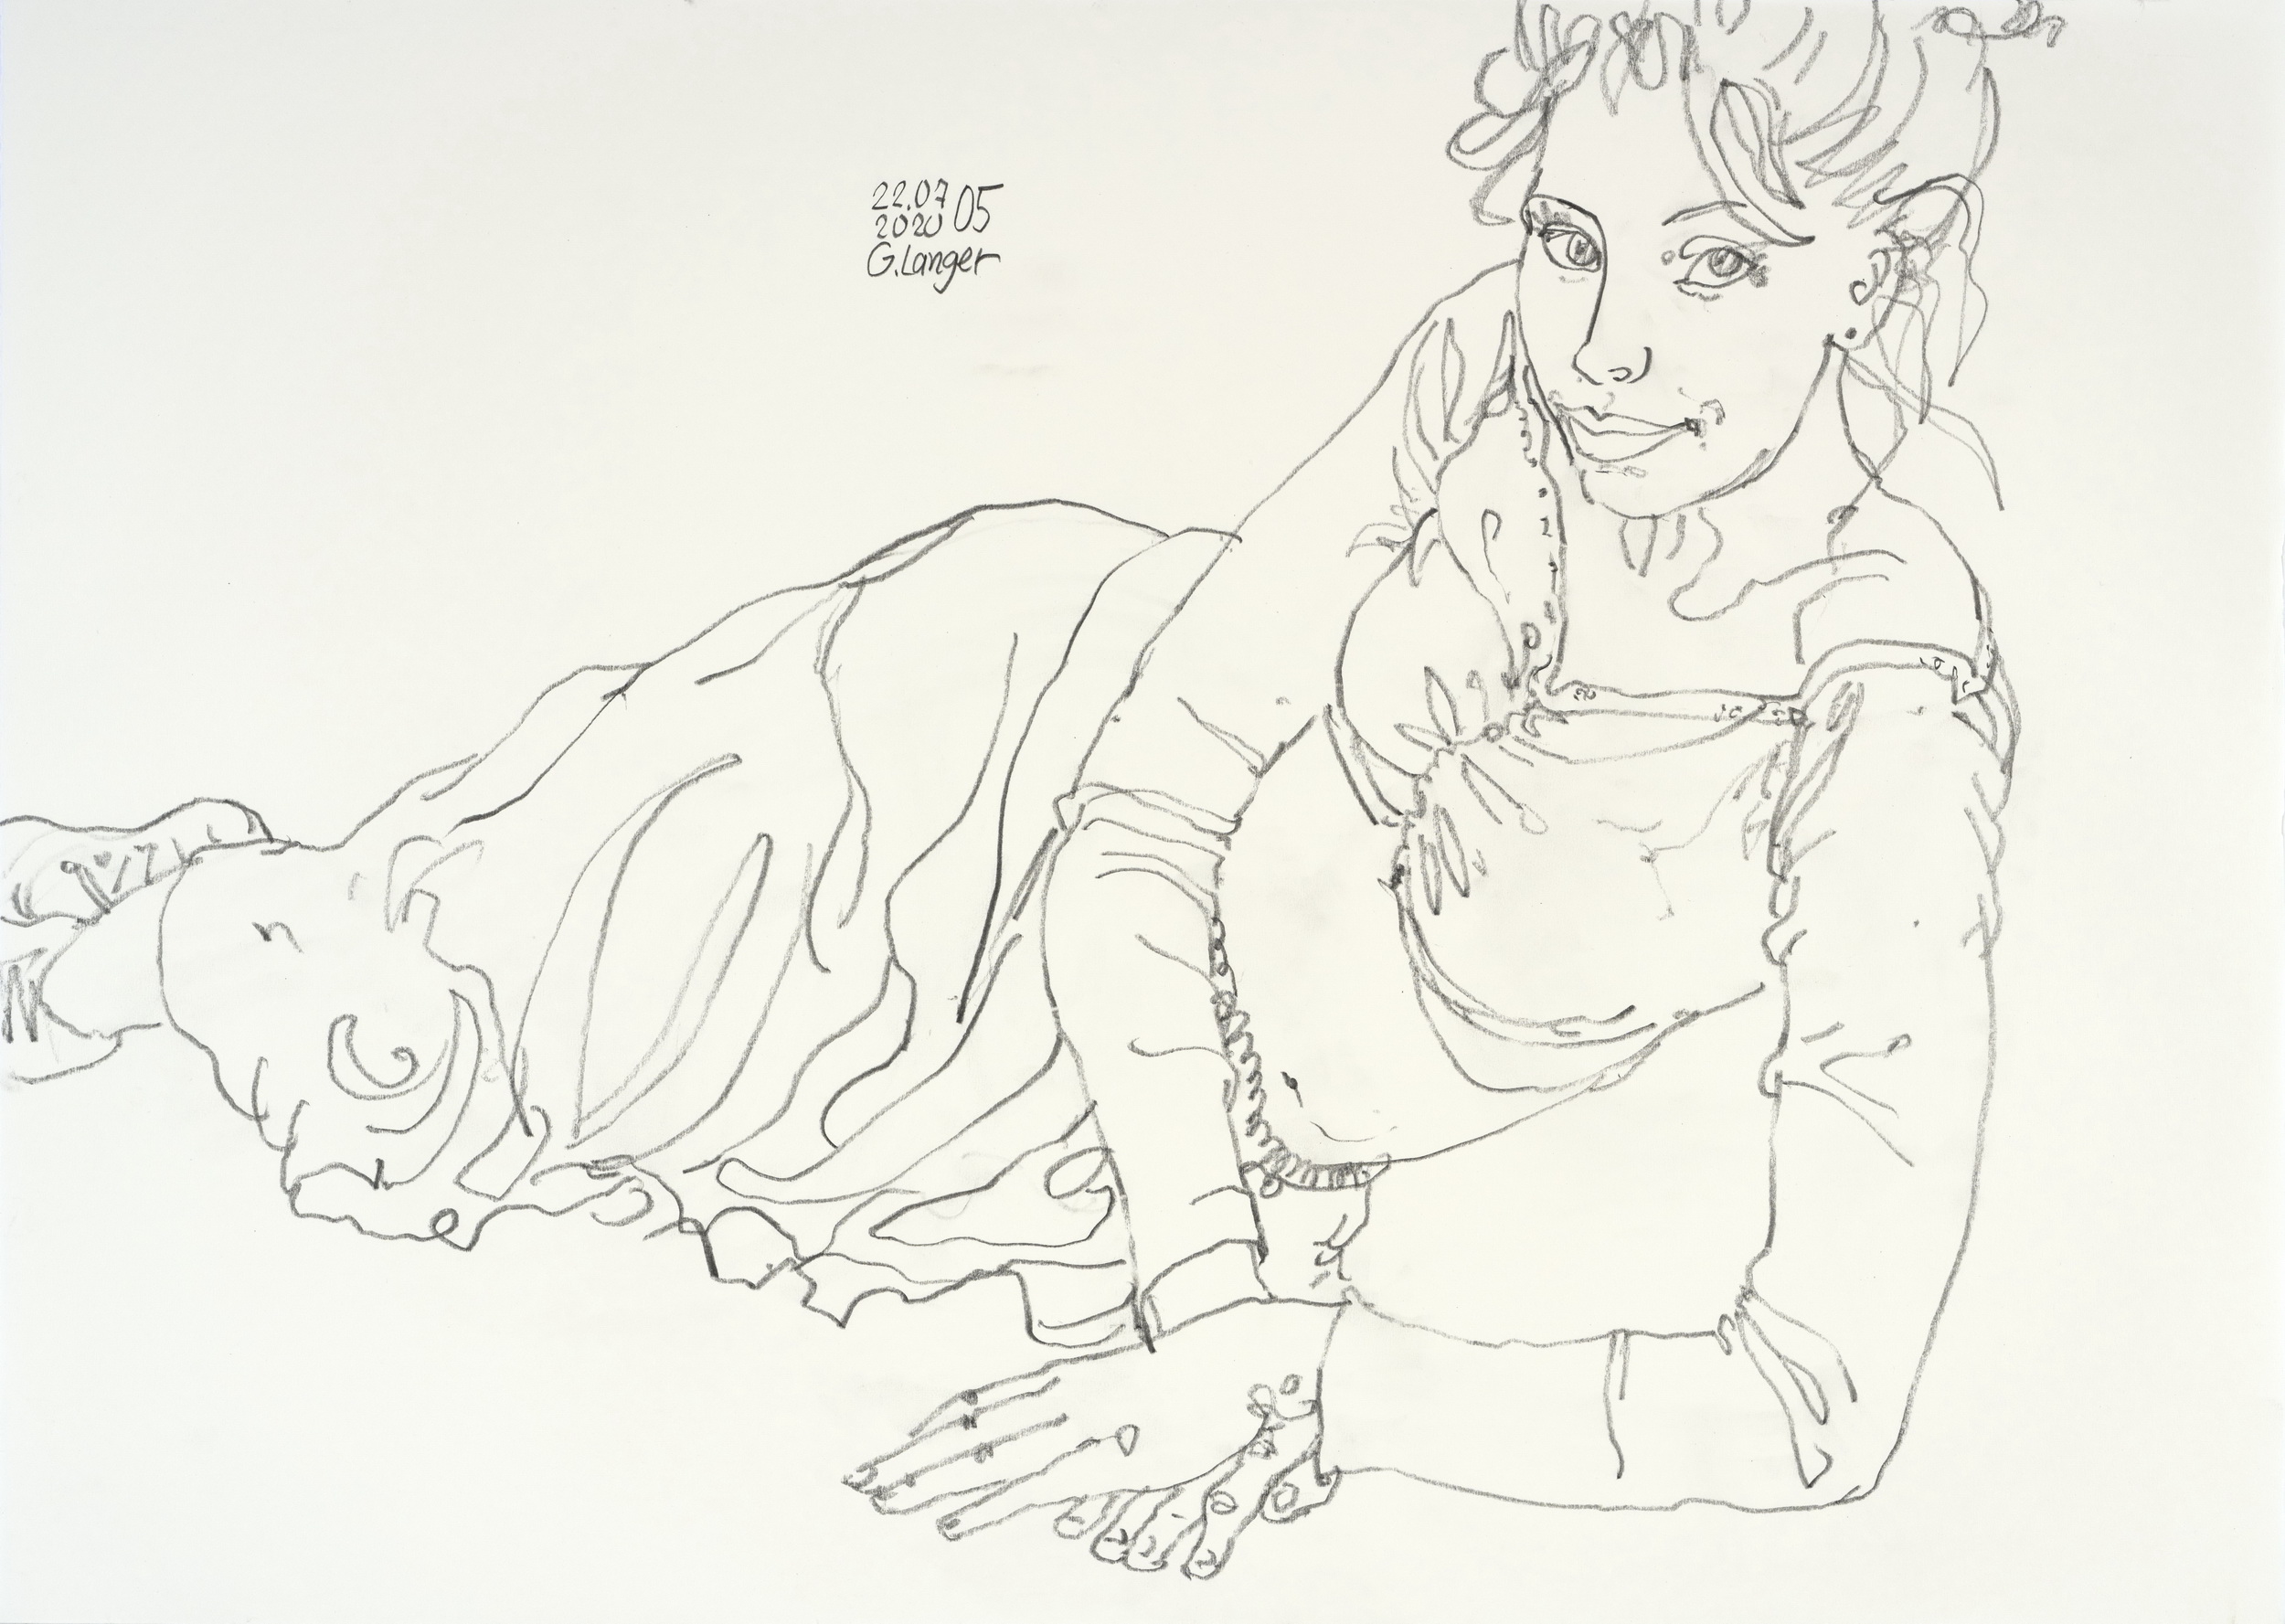 Gunter Langer, Liegendes Mädchen zur Seite gedreht, 2020, Zeichenpapier, 51 x 71 cm